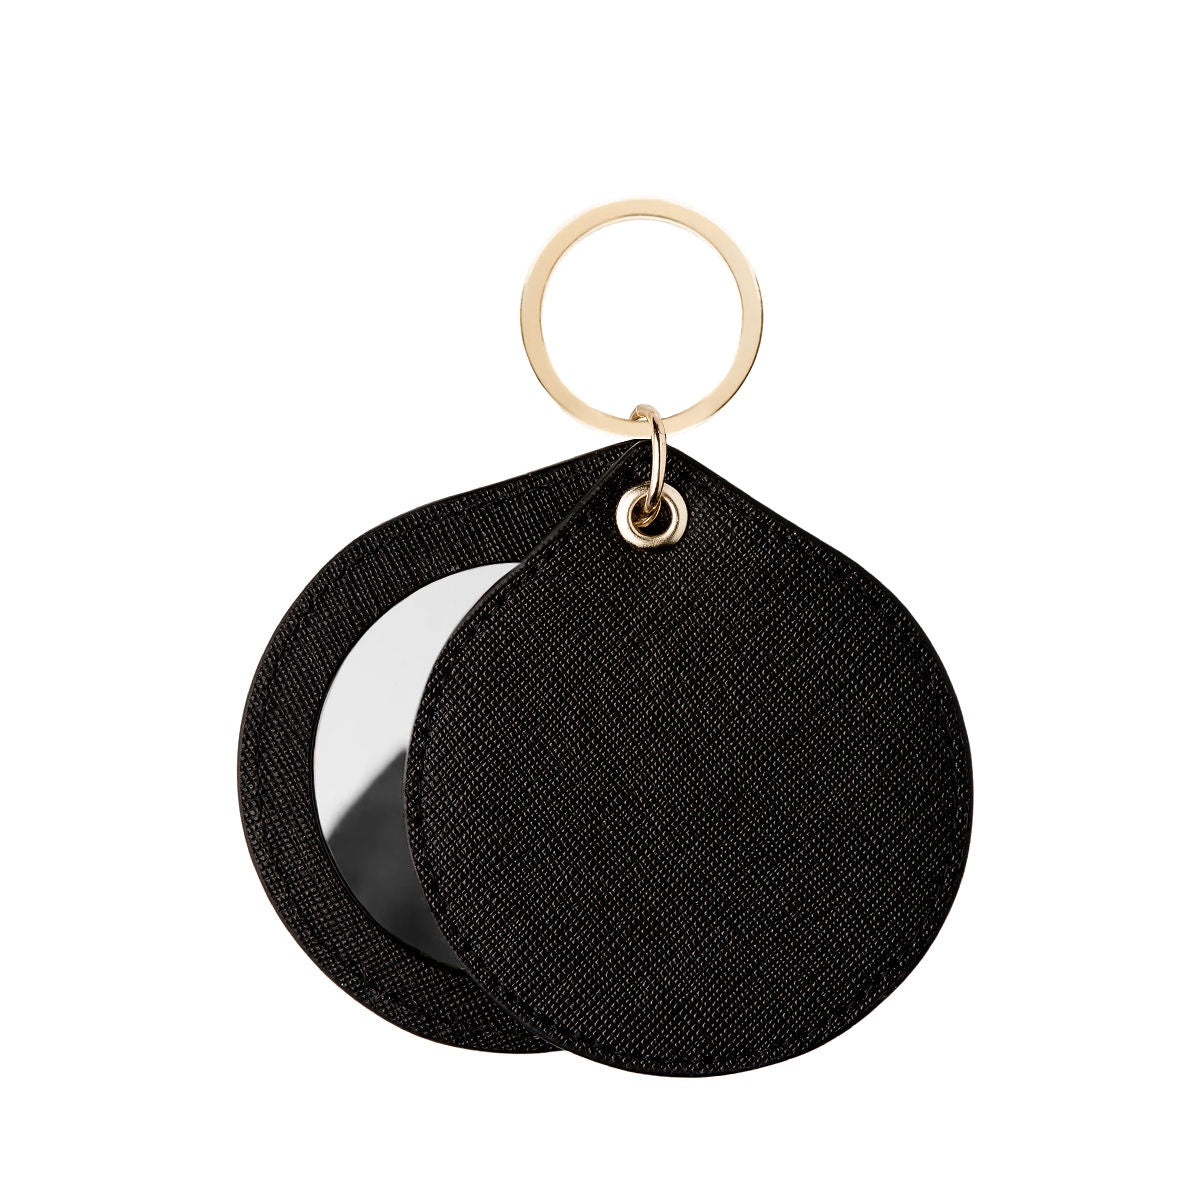 Compact Mirror - Black Saffiano Leather